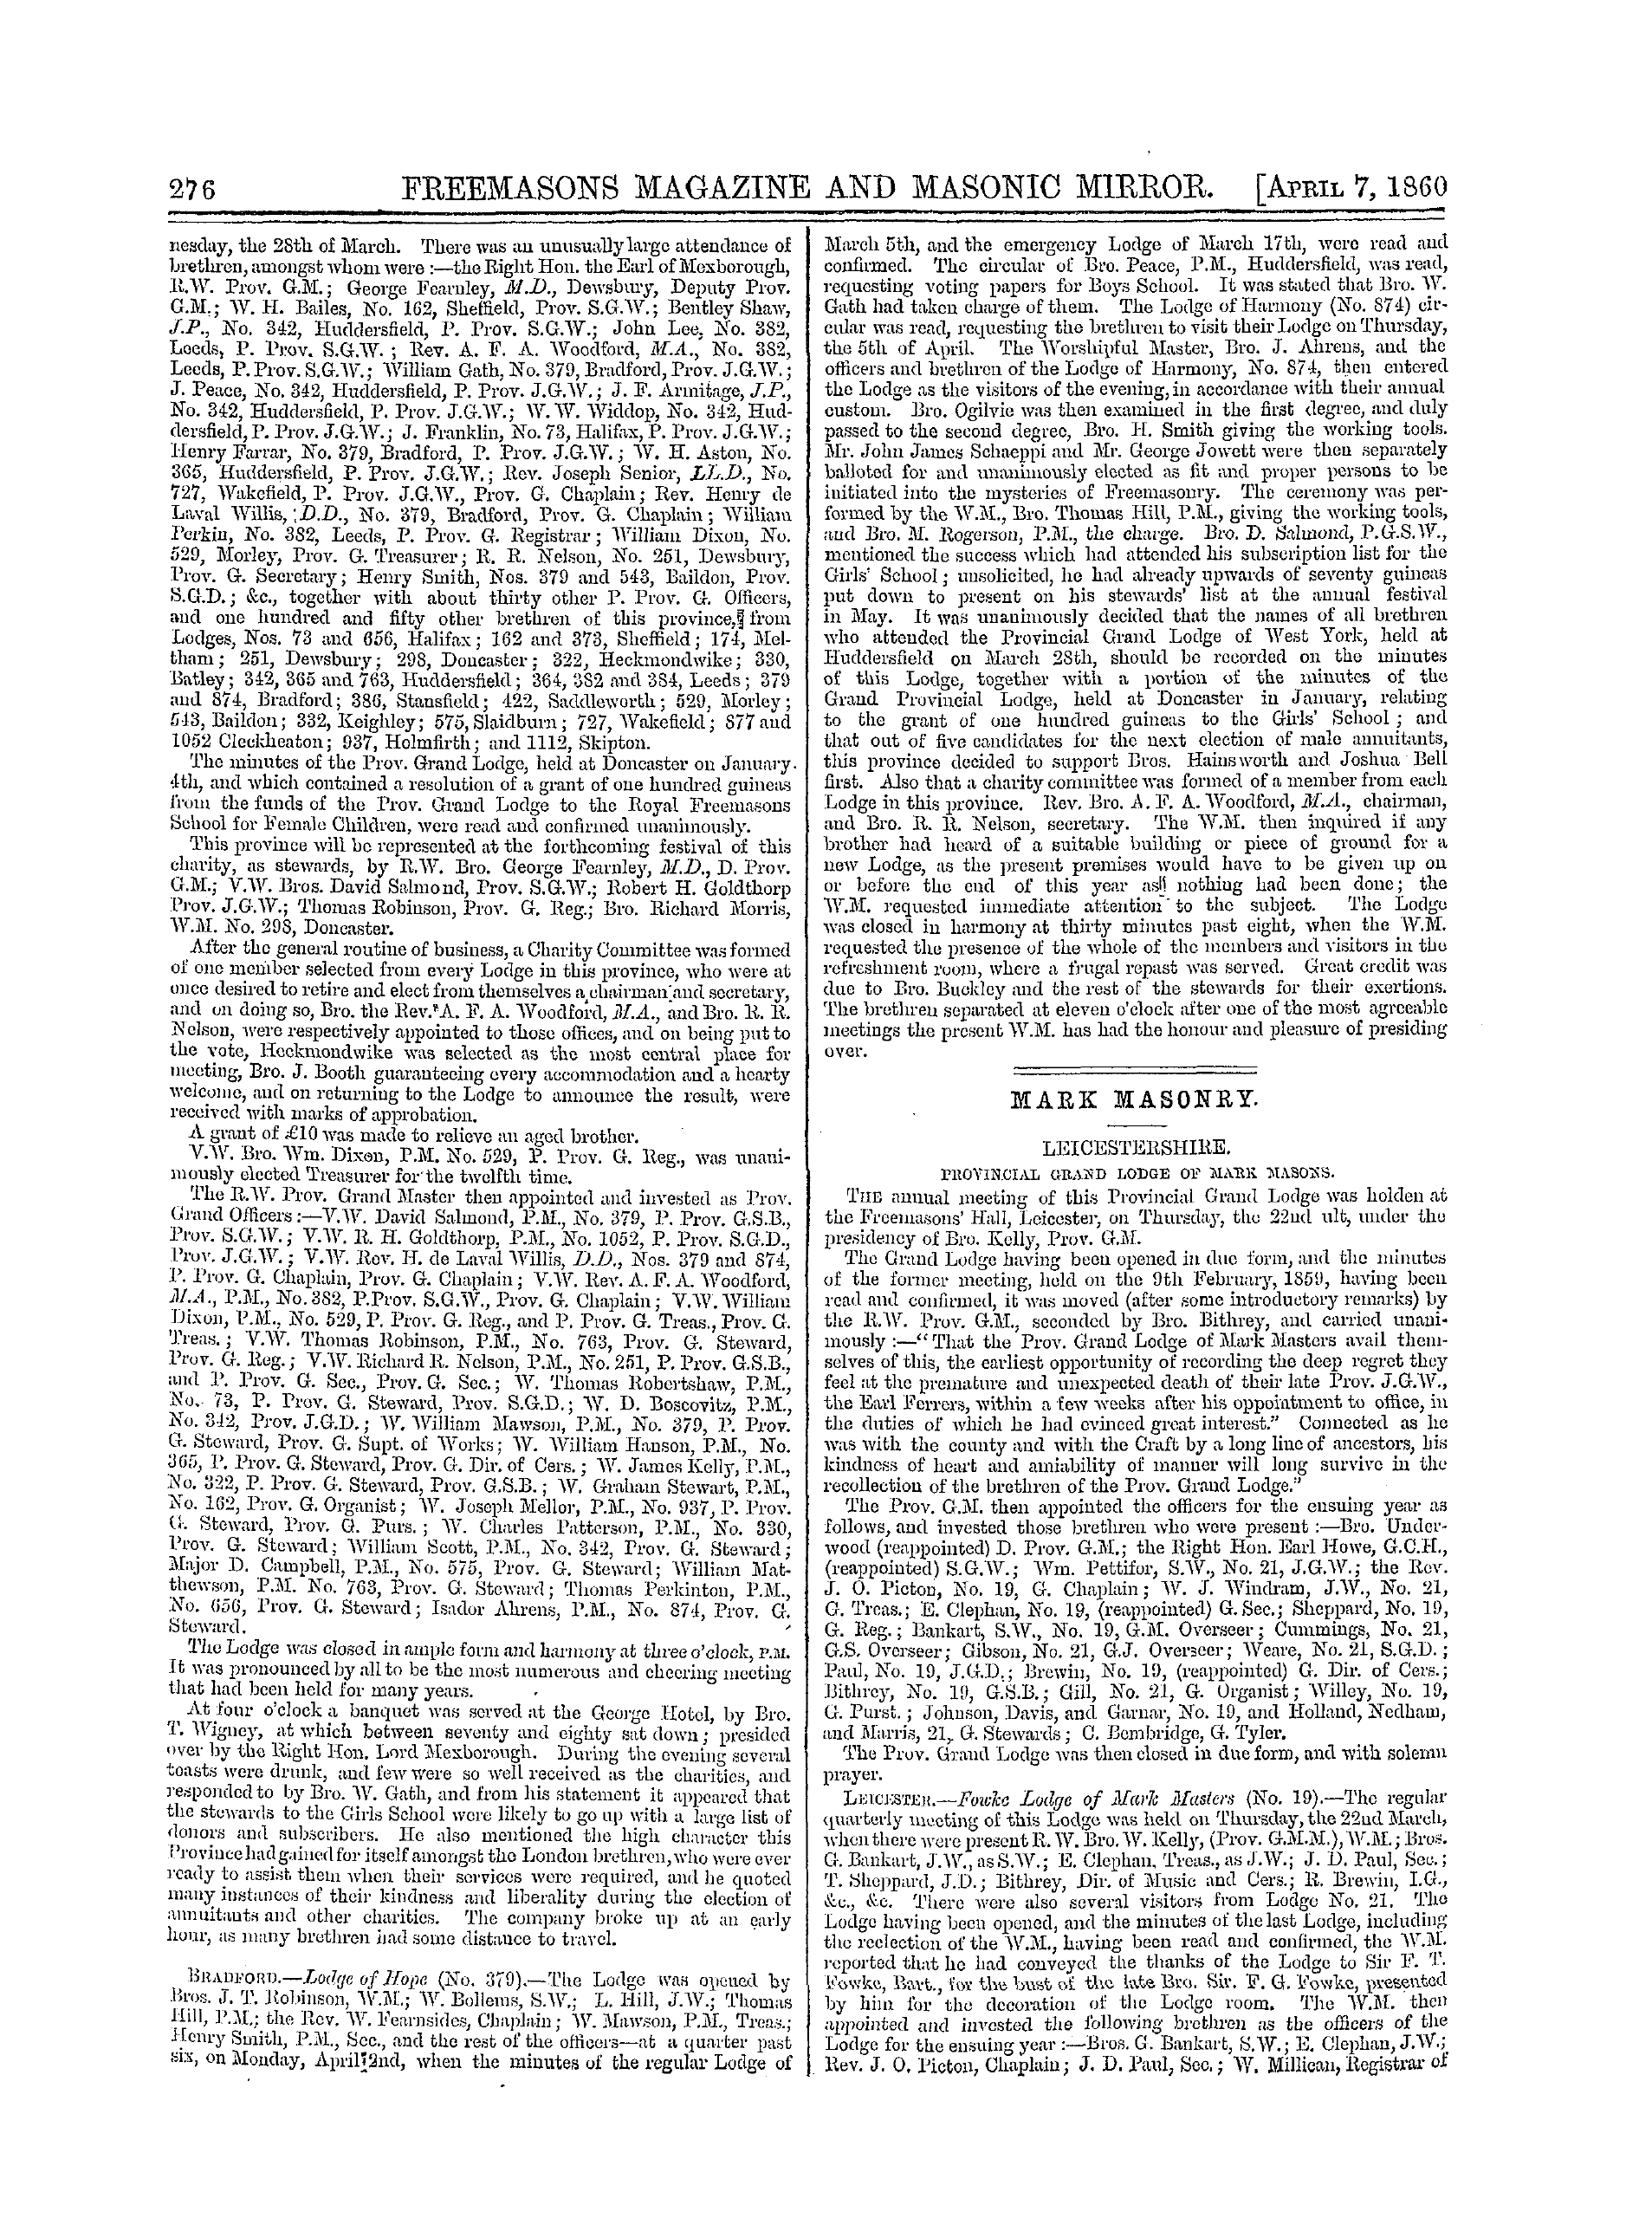 The Freemasons' Monthly Magazine: 1860-04-07 - Mark Masonry.